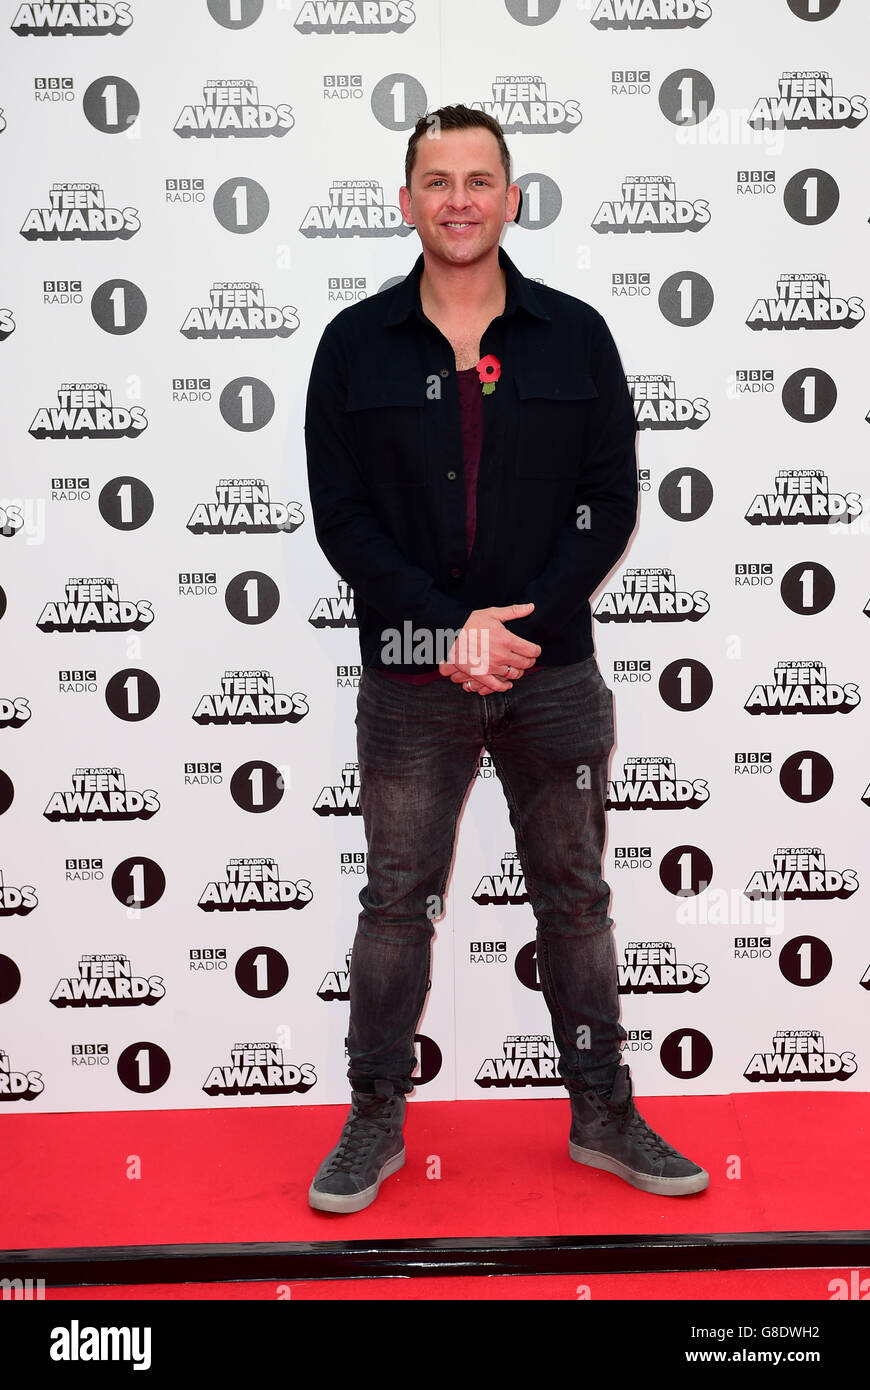 Scott Mills arrive pour les prix Teen de la BBC radio 1, Wembley Arena, Londres. APPUYEZ SUR ASSOCIATION photo. Date de la photo: Dimanche 8 novembre 2015. Le crédit photo devrait se lire comme suit : Ian West/PA Wire Banque D'Images